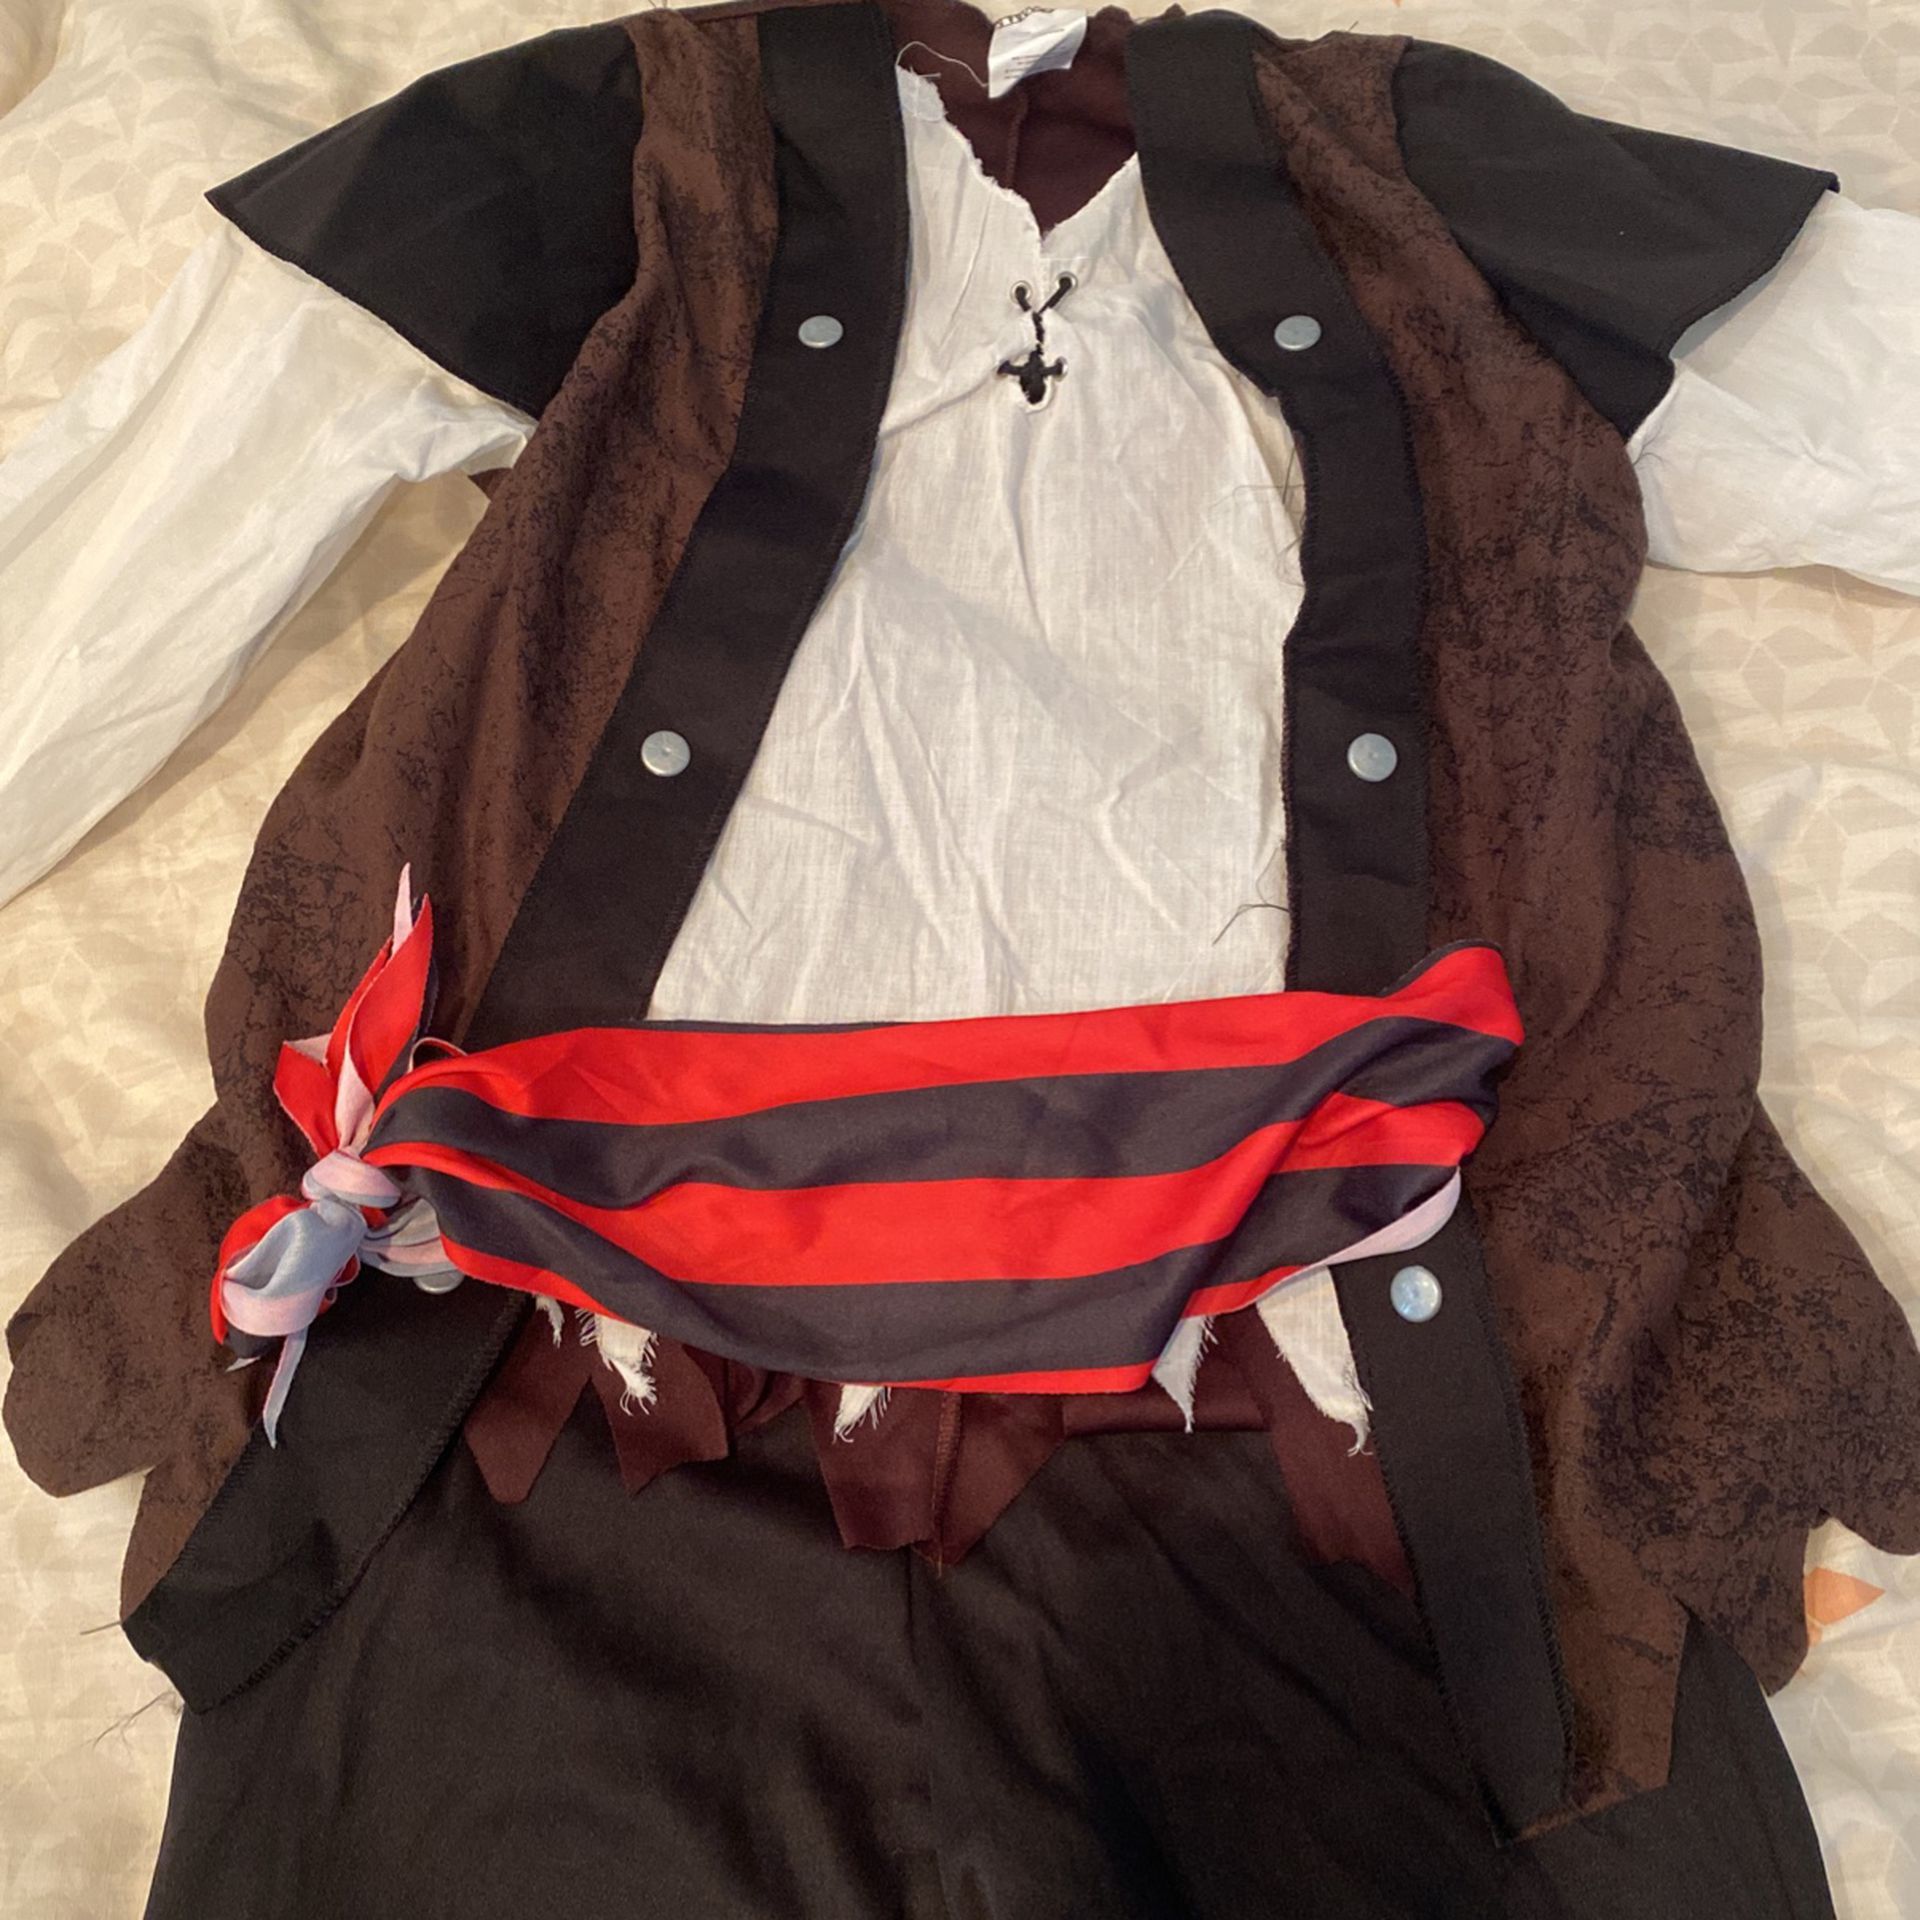 Pirate Costume - 7-9yrs (+ish)